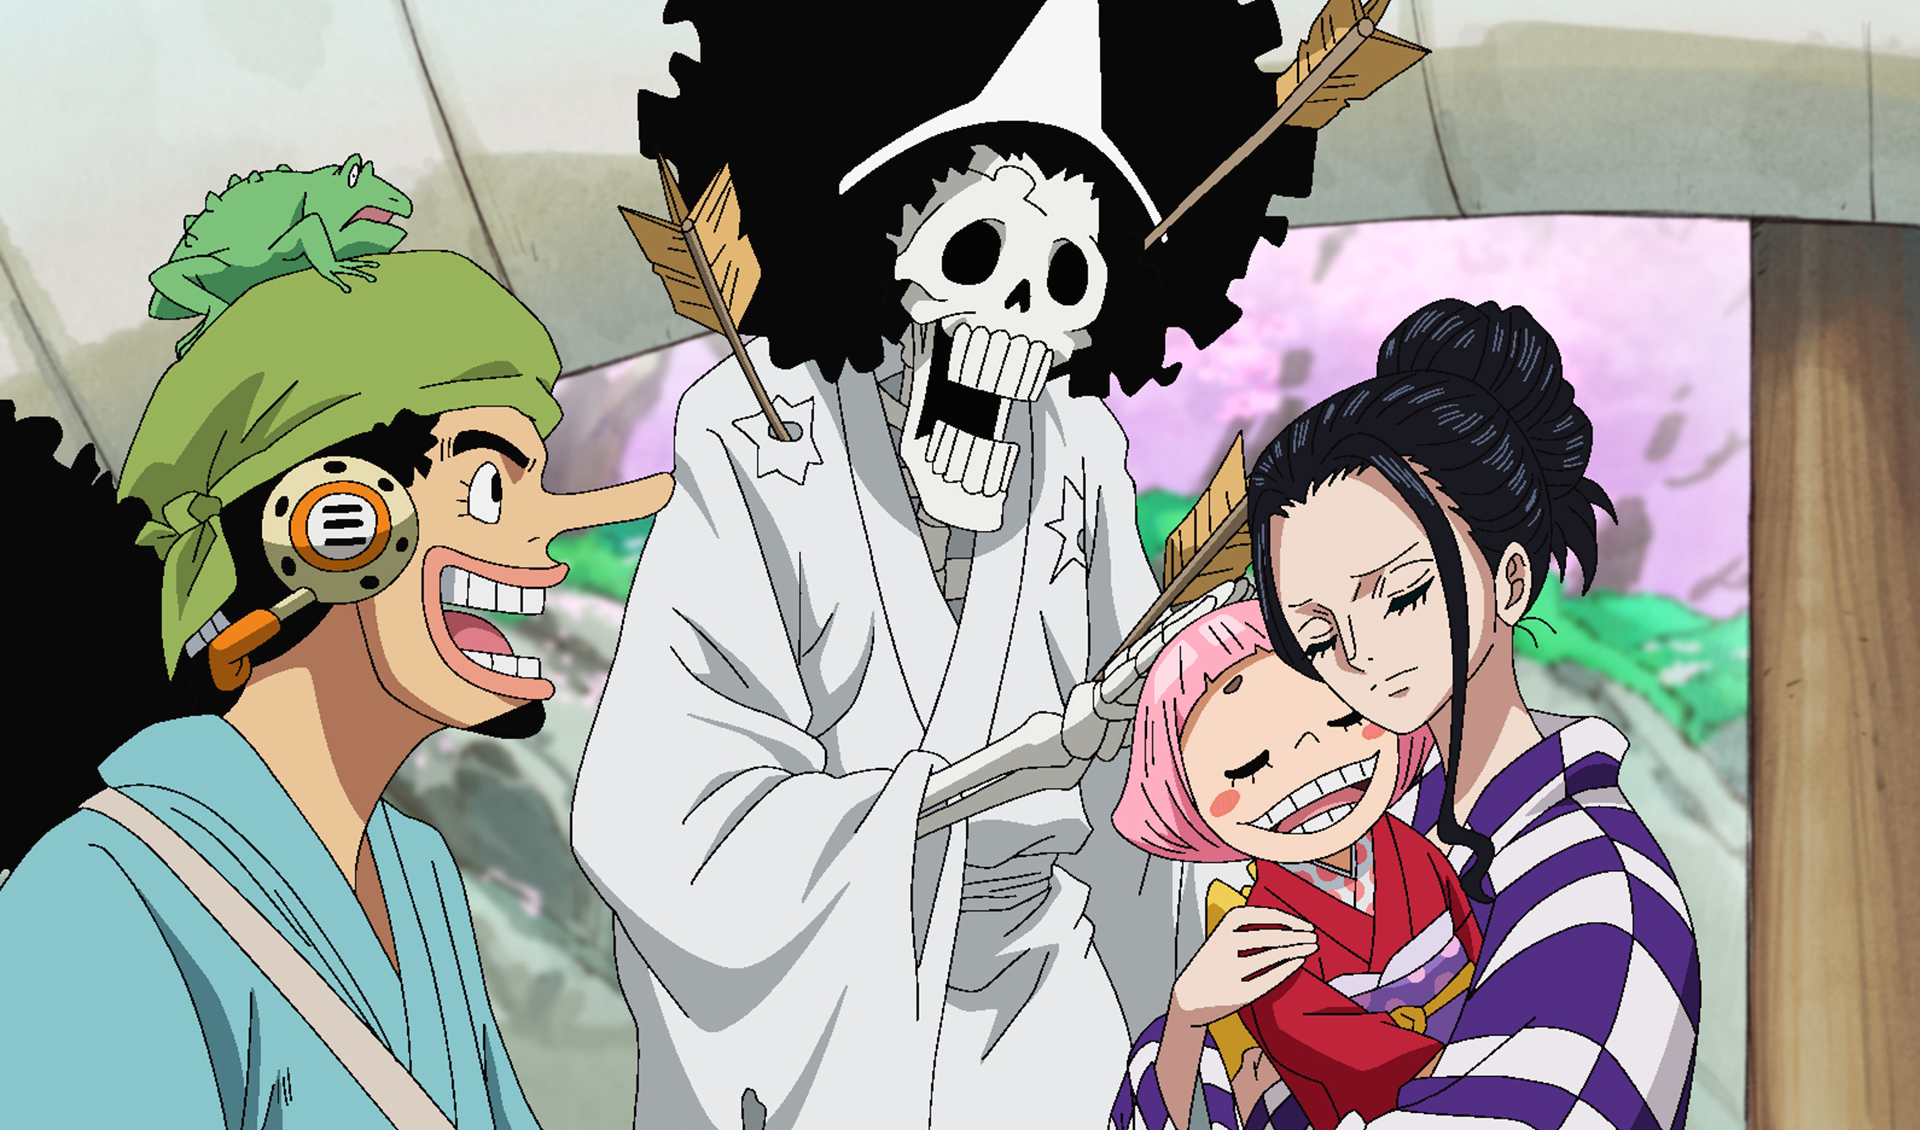 Venta One Piece Episode 953 Watch Online En Stock